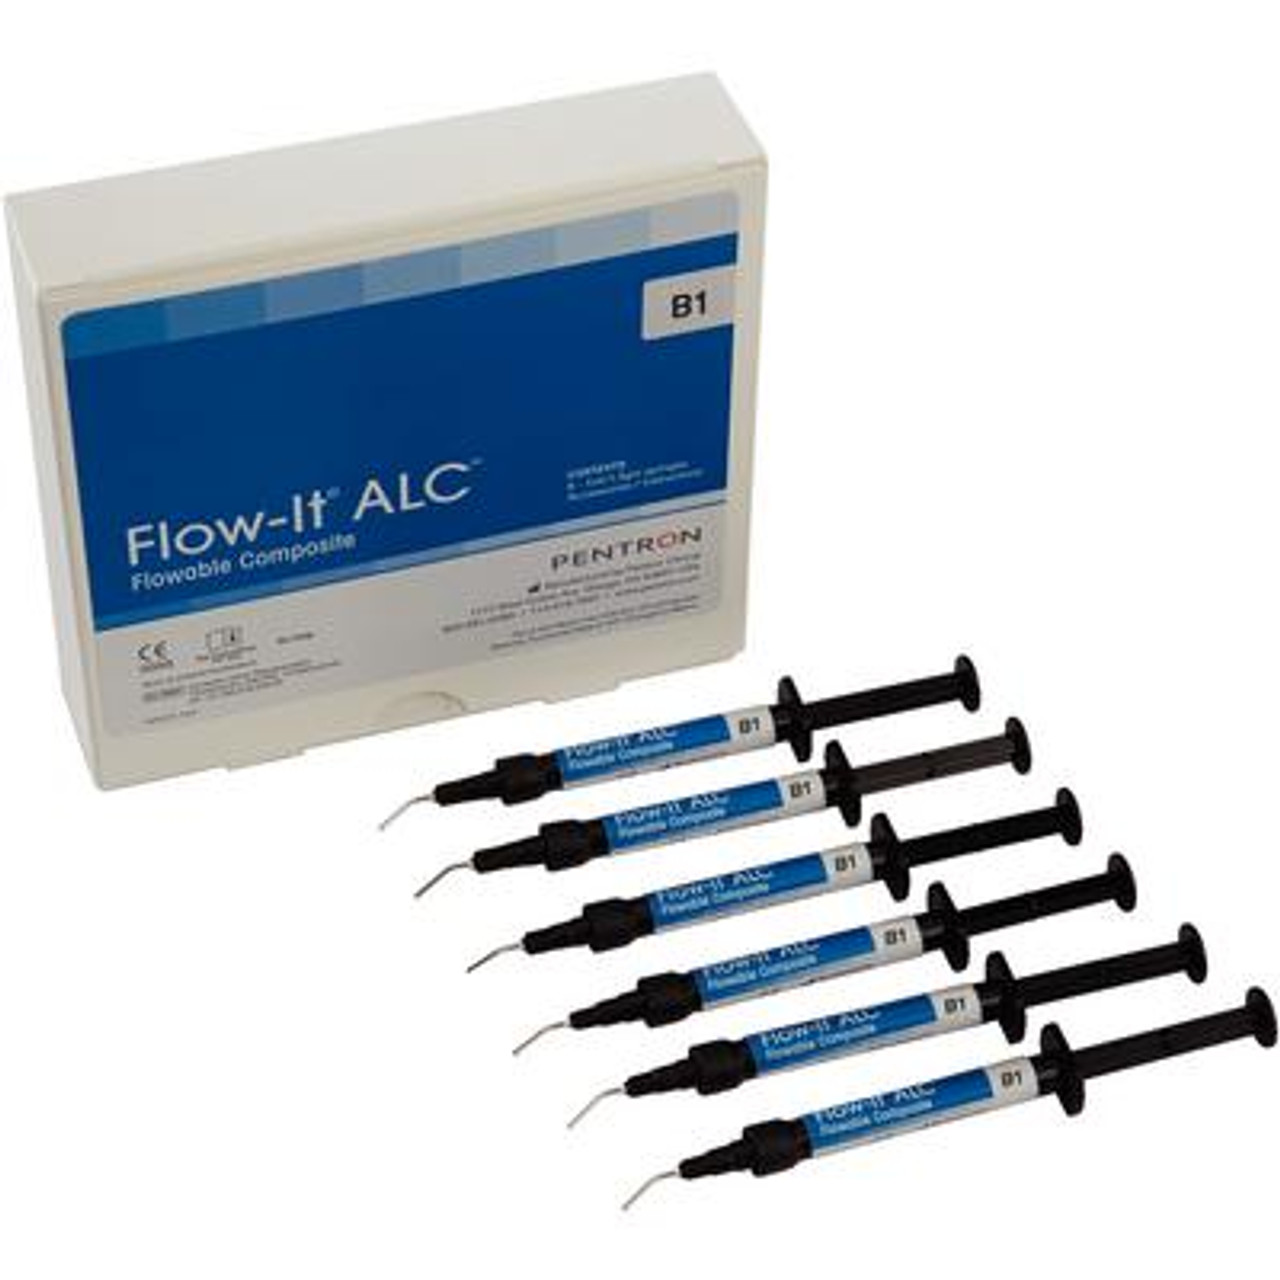 Pentron Flow-It ALC Flowable Composite B1 A0 Value Pack Syringe 6x1.5g & Tips